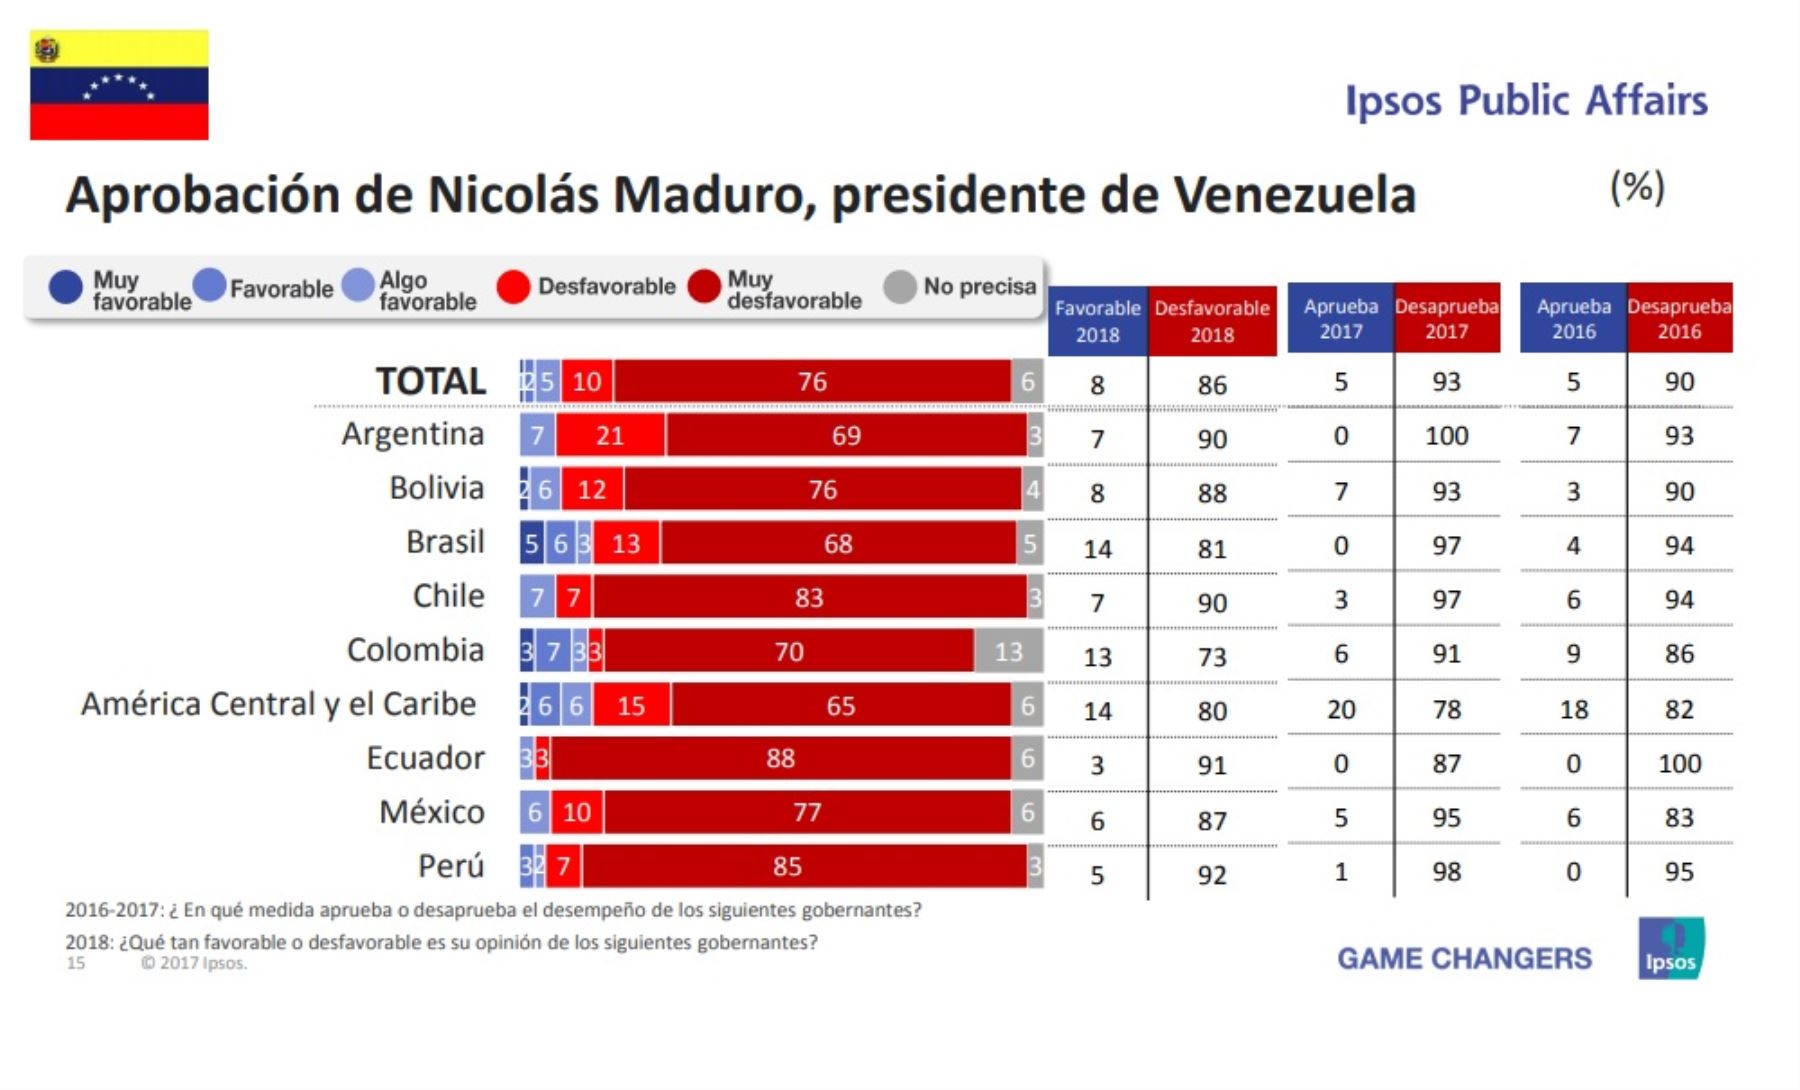 Aprobación del presidente de Venezuela, Nicolás Maduro. Encuesta Ipsos Public Affairs 2018.